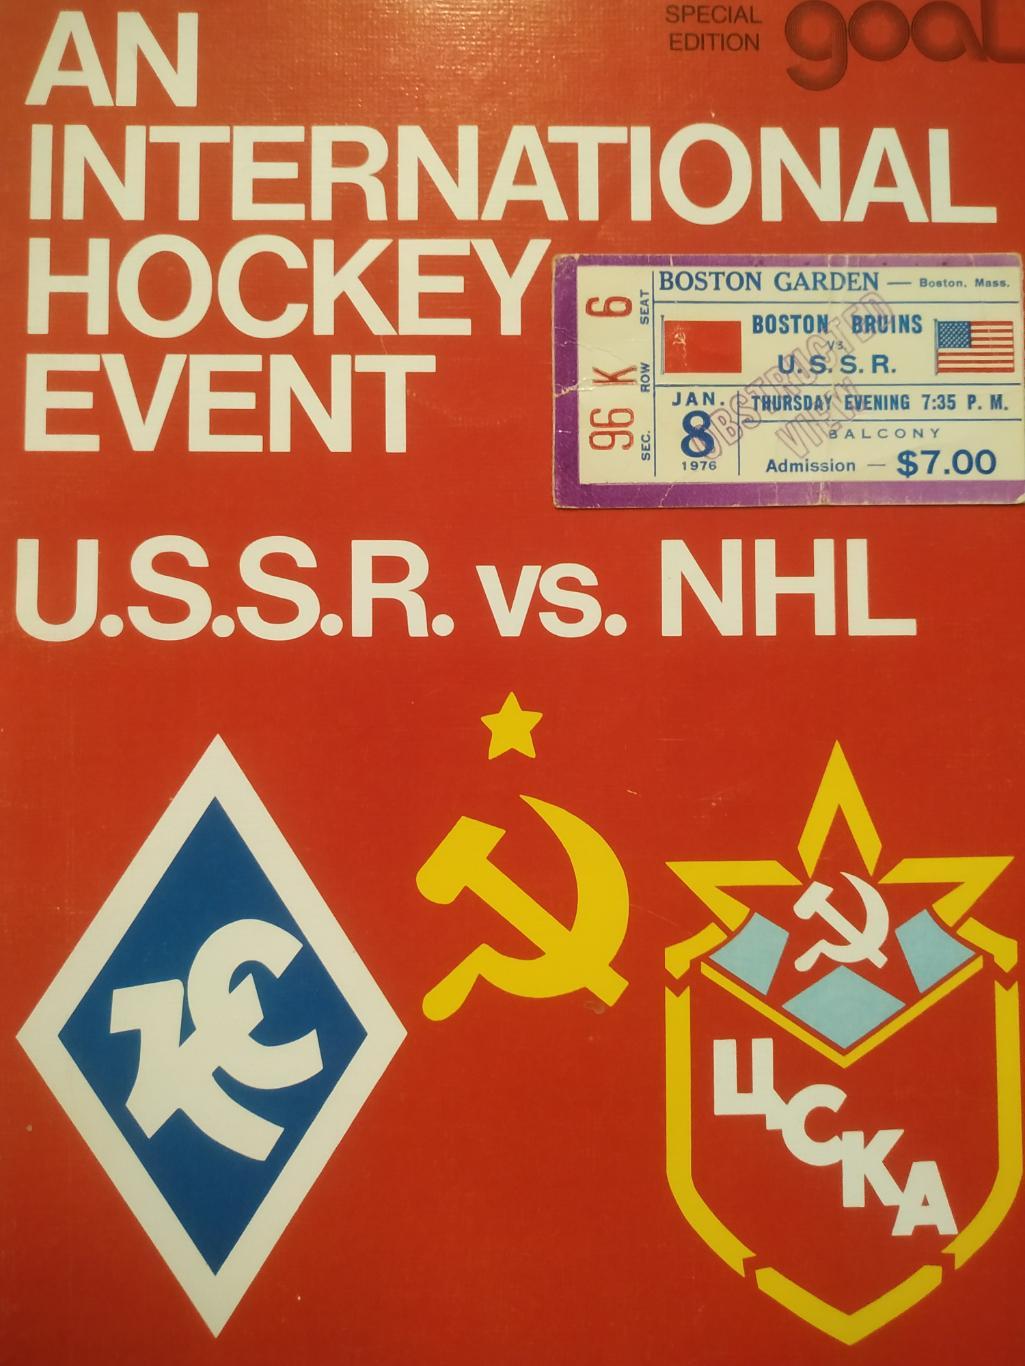 ПРОГРАММА МАТЧА НХЛ КРЫЛЬЯ СОВЕТОВ - БОСТОН 1975-76 NHL SUPER SERIE PROGRAM